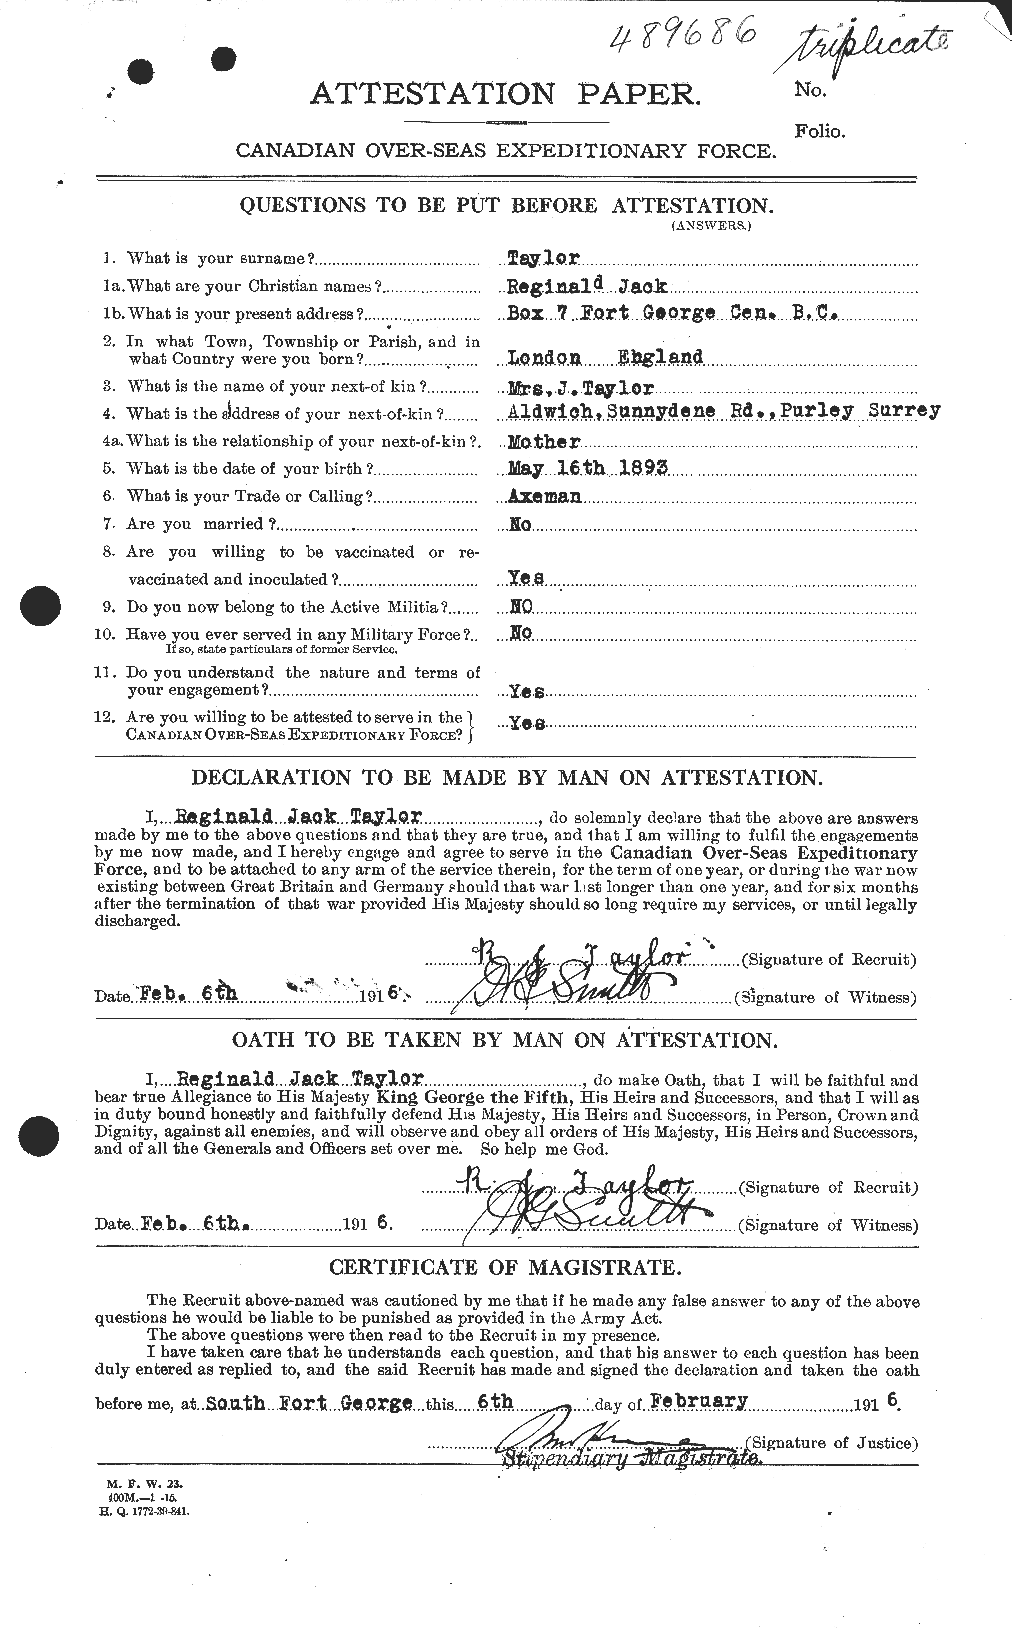 Dossiers du Personnel de la Première Guerre mondiale - CEC 627804a